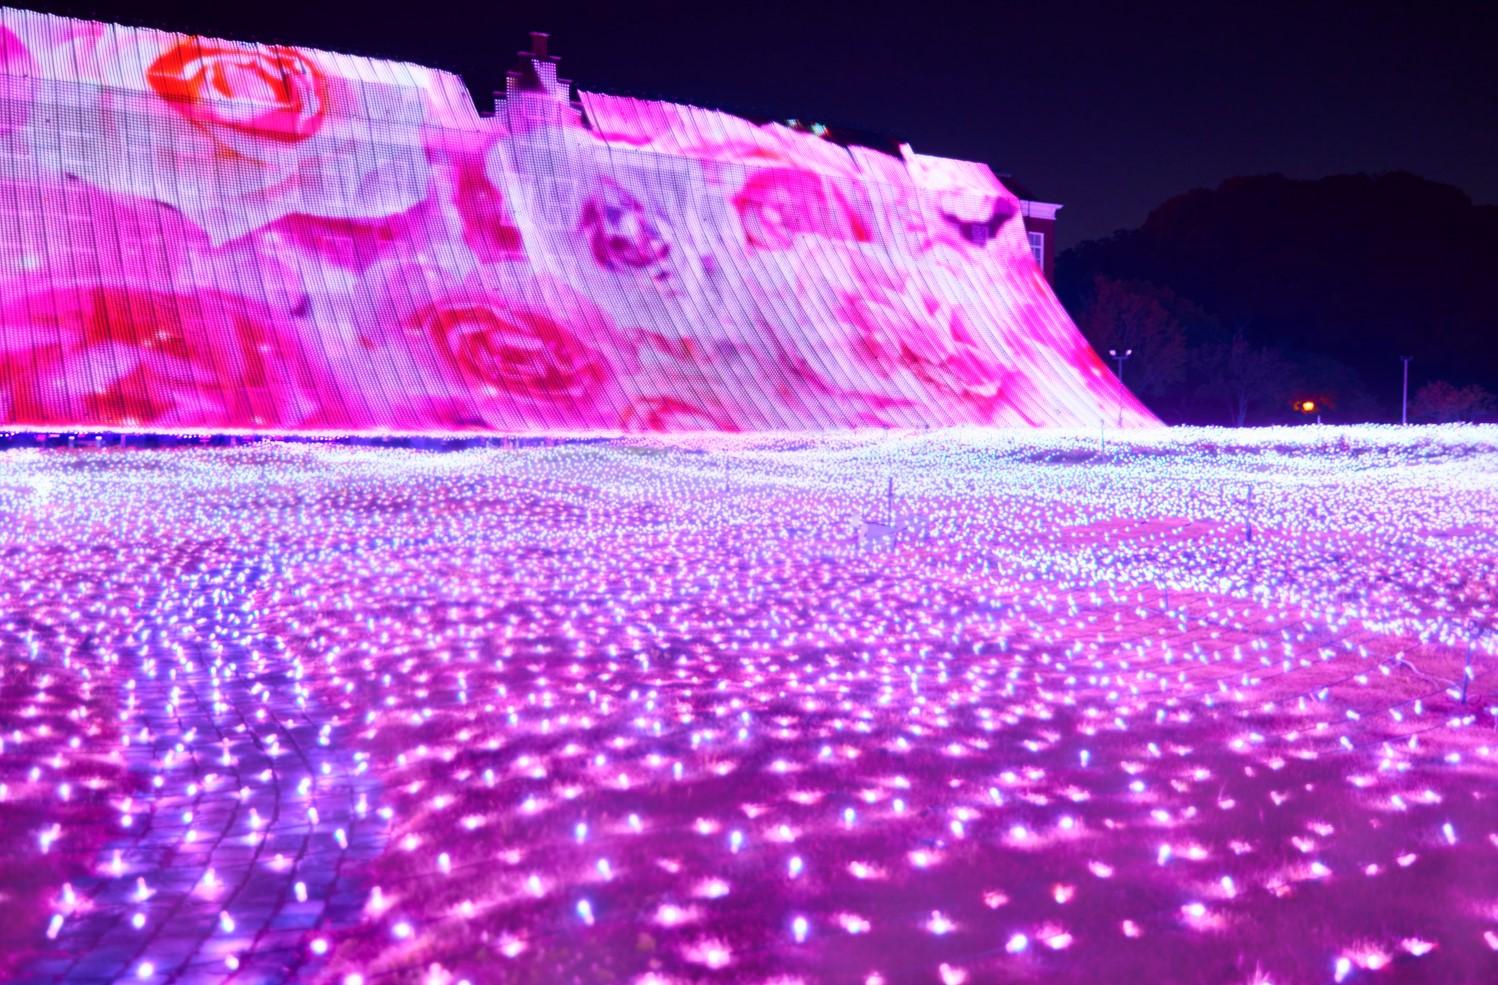 色とりどりのバラと噴水ショーのコラボレーションを堪能できる新エリア「ウォーターガーデン」-2